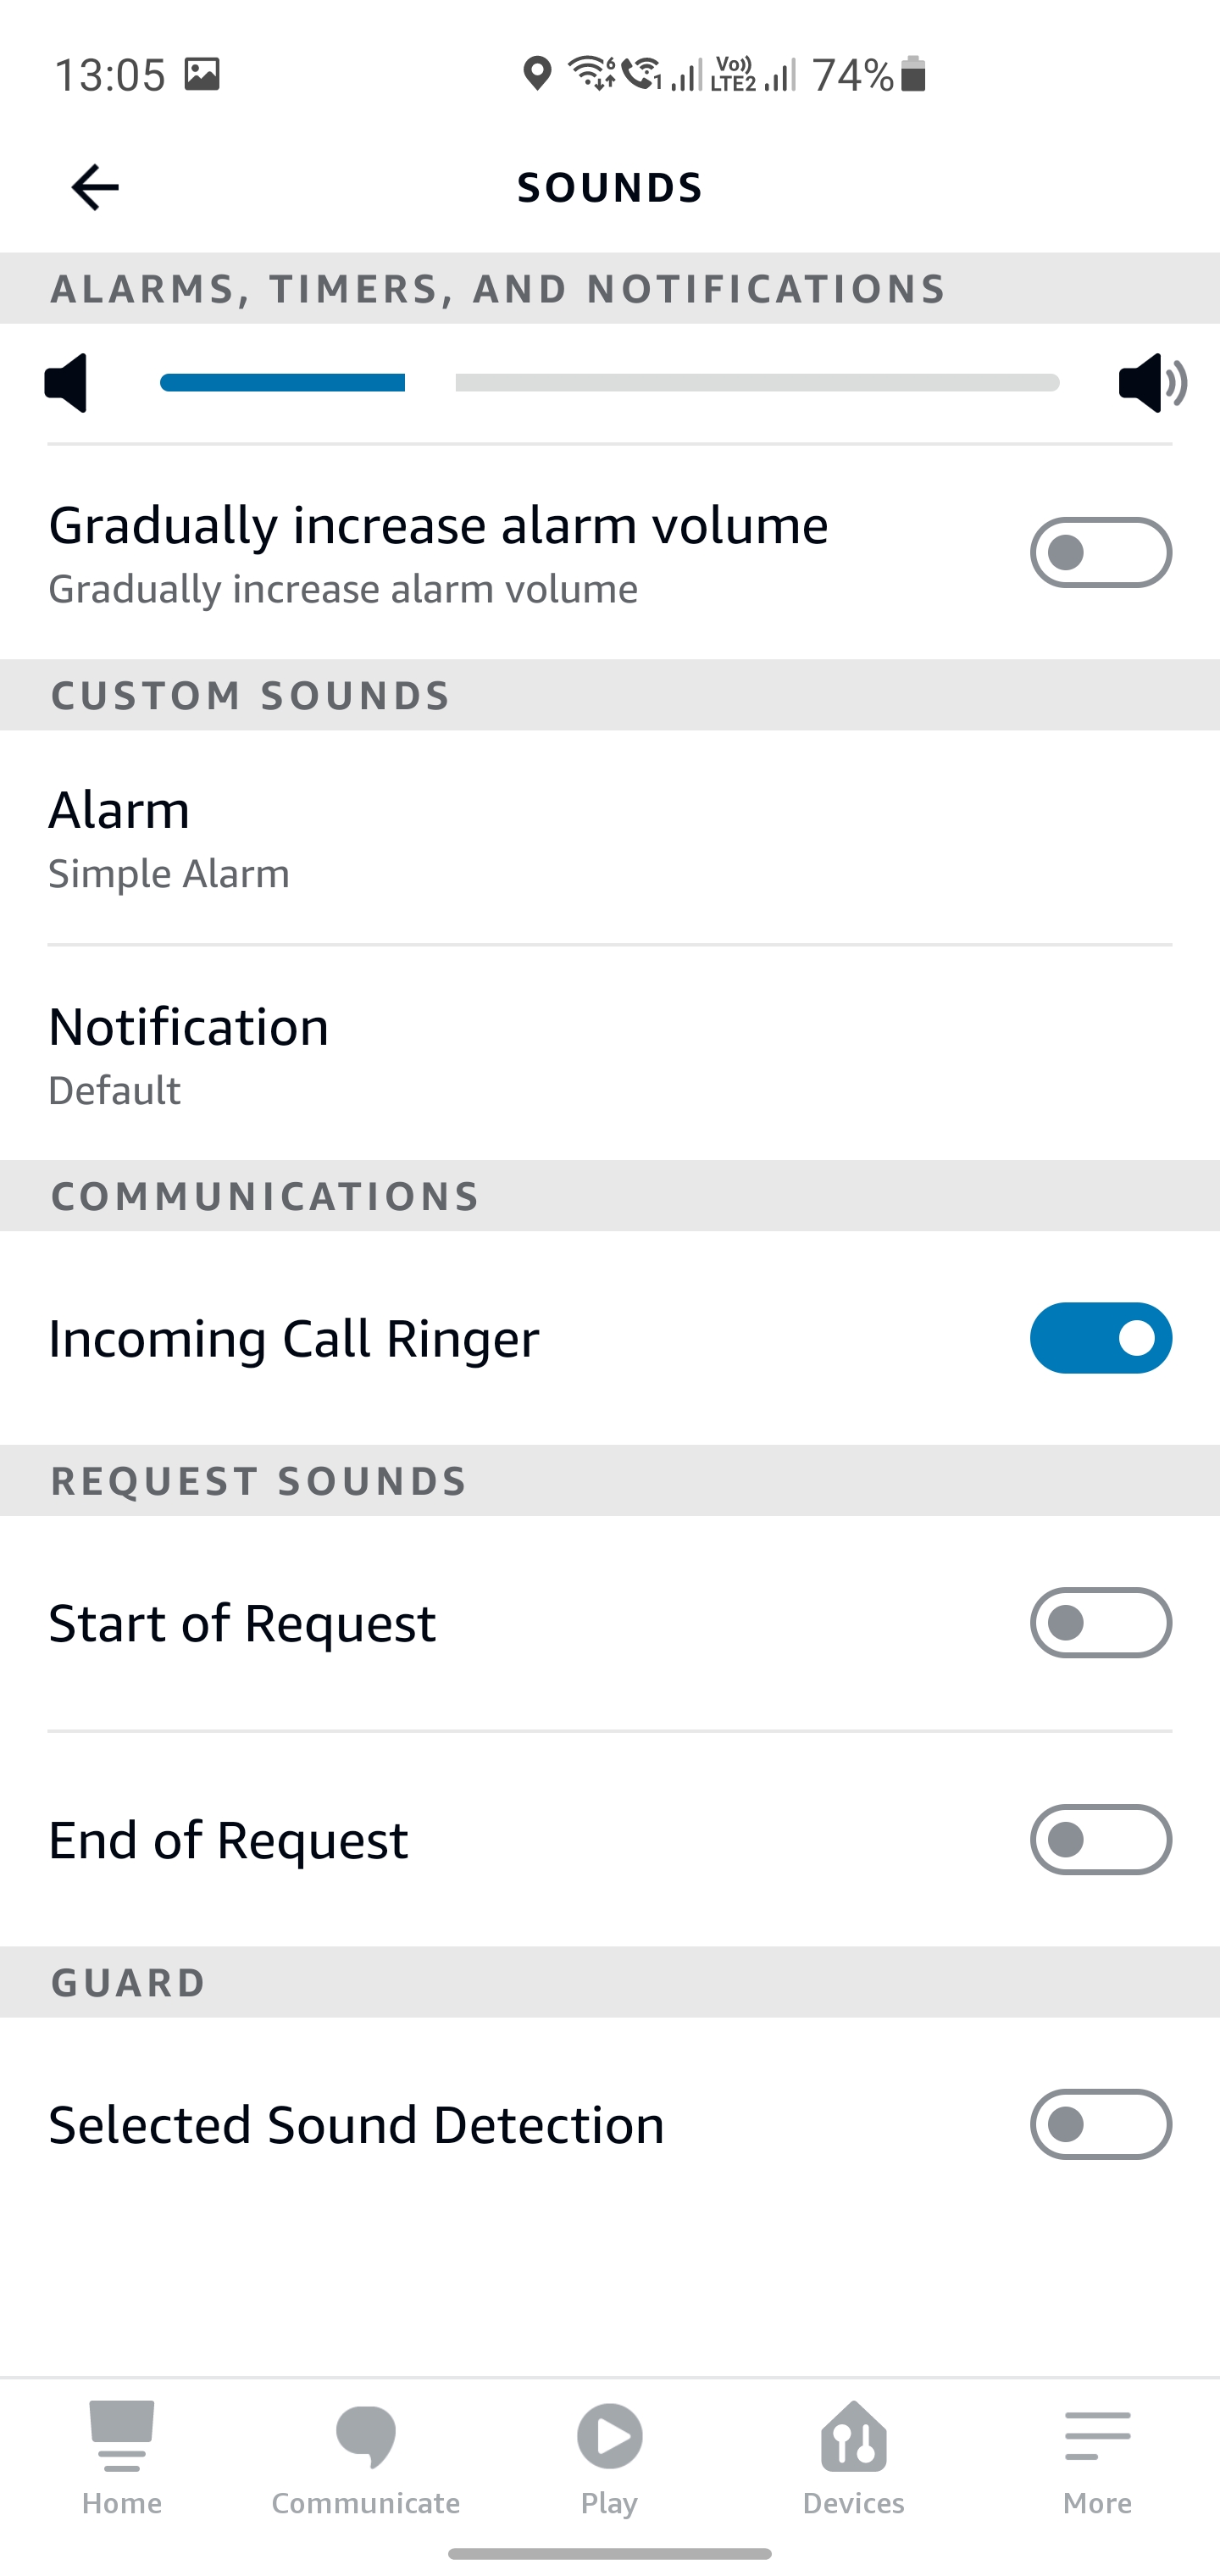 Asystent, muzyka i inteligentny dom w jednym głośniku - recenzja Amazon Echo 4 (wersja międzynarodowa)